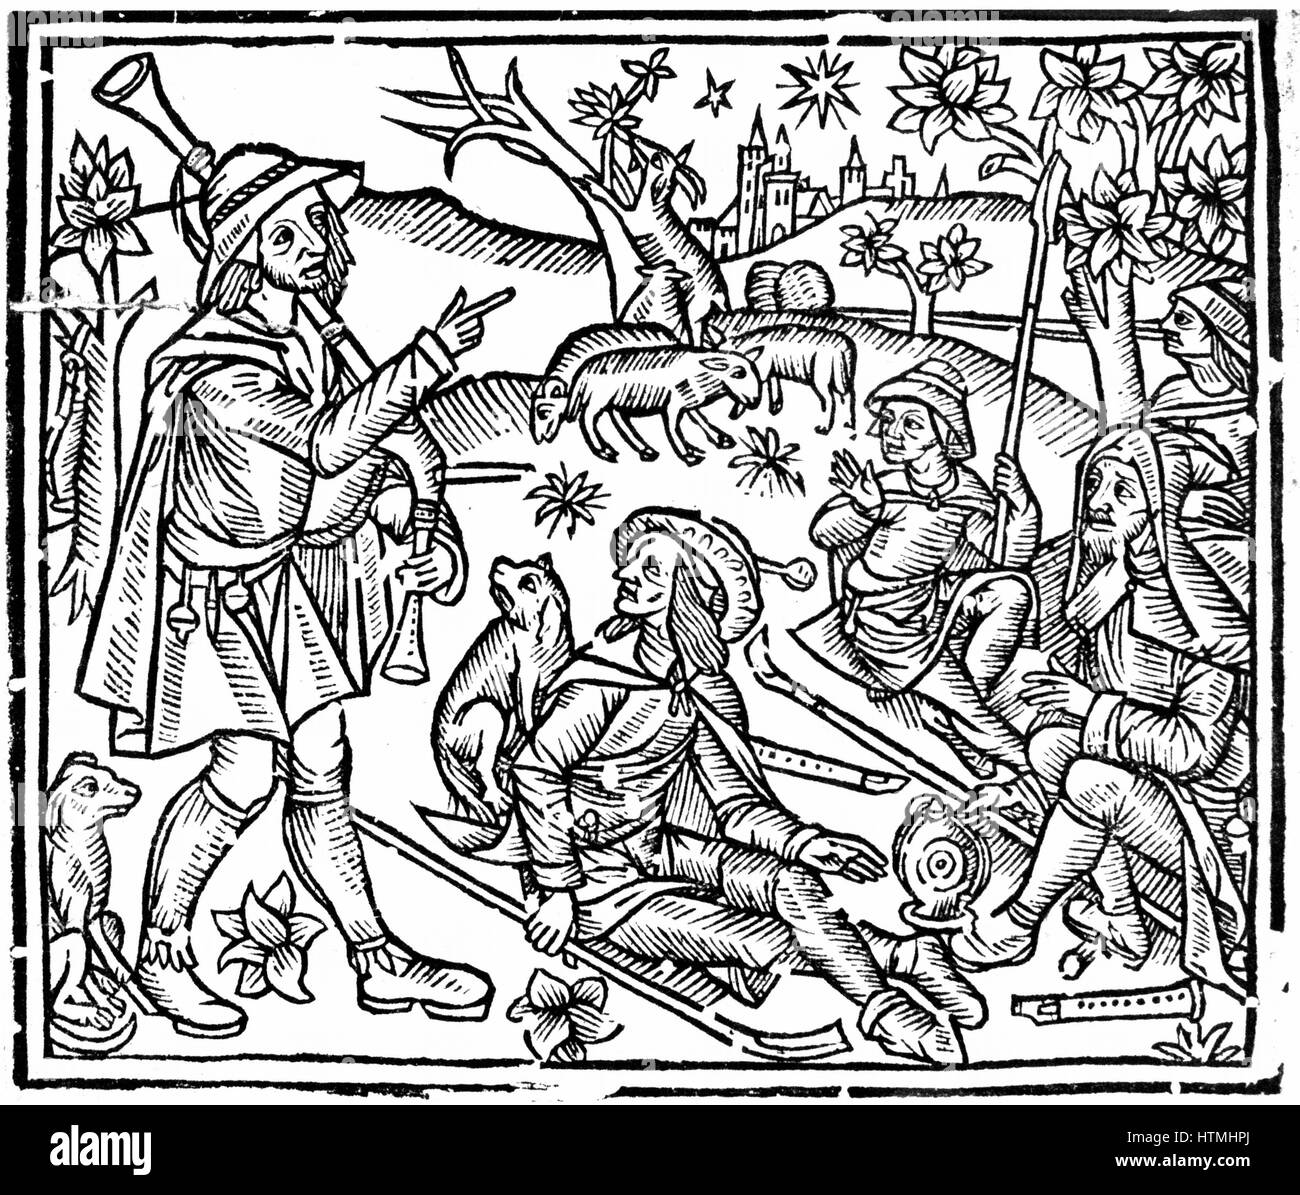 Les bergers avec leurs troupeaux et les chiens. La figure de gauche est tenue et cornemuse, ainsi que d'escrocs pour manipuler les moutons, il y a des instruments à vent sur le terrain. Gravure sur bois à partir de début du 16ème siècle de l'édition anglaise de "l'Shepheards Kalendar' Banque D'Images